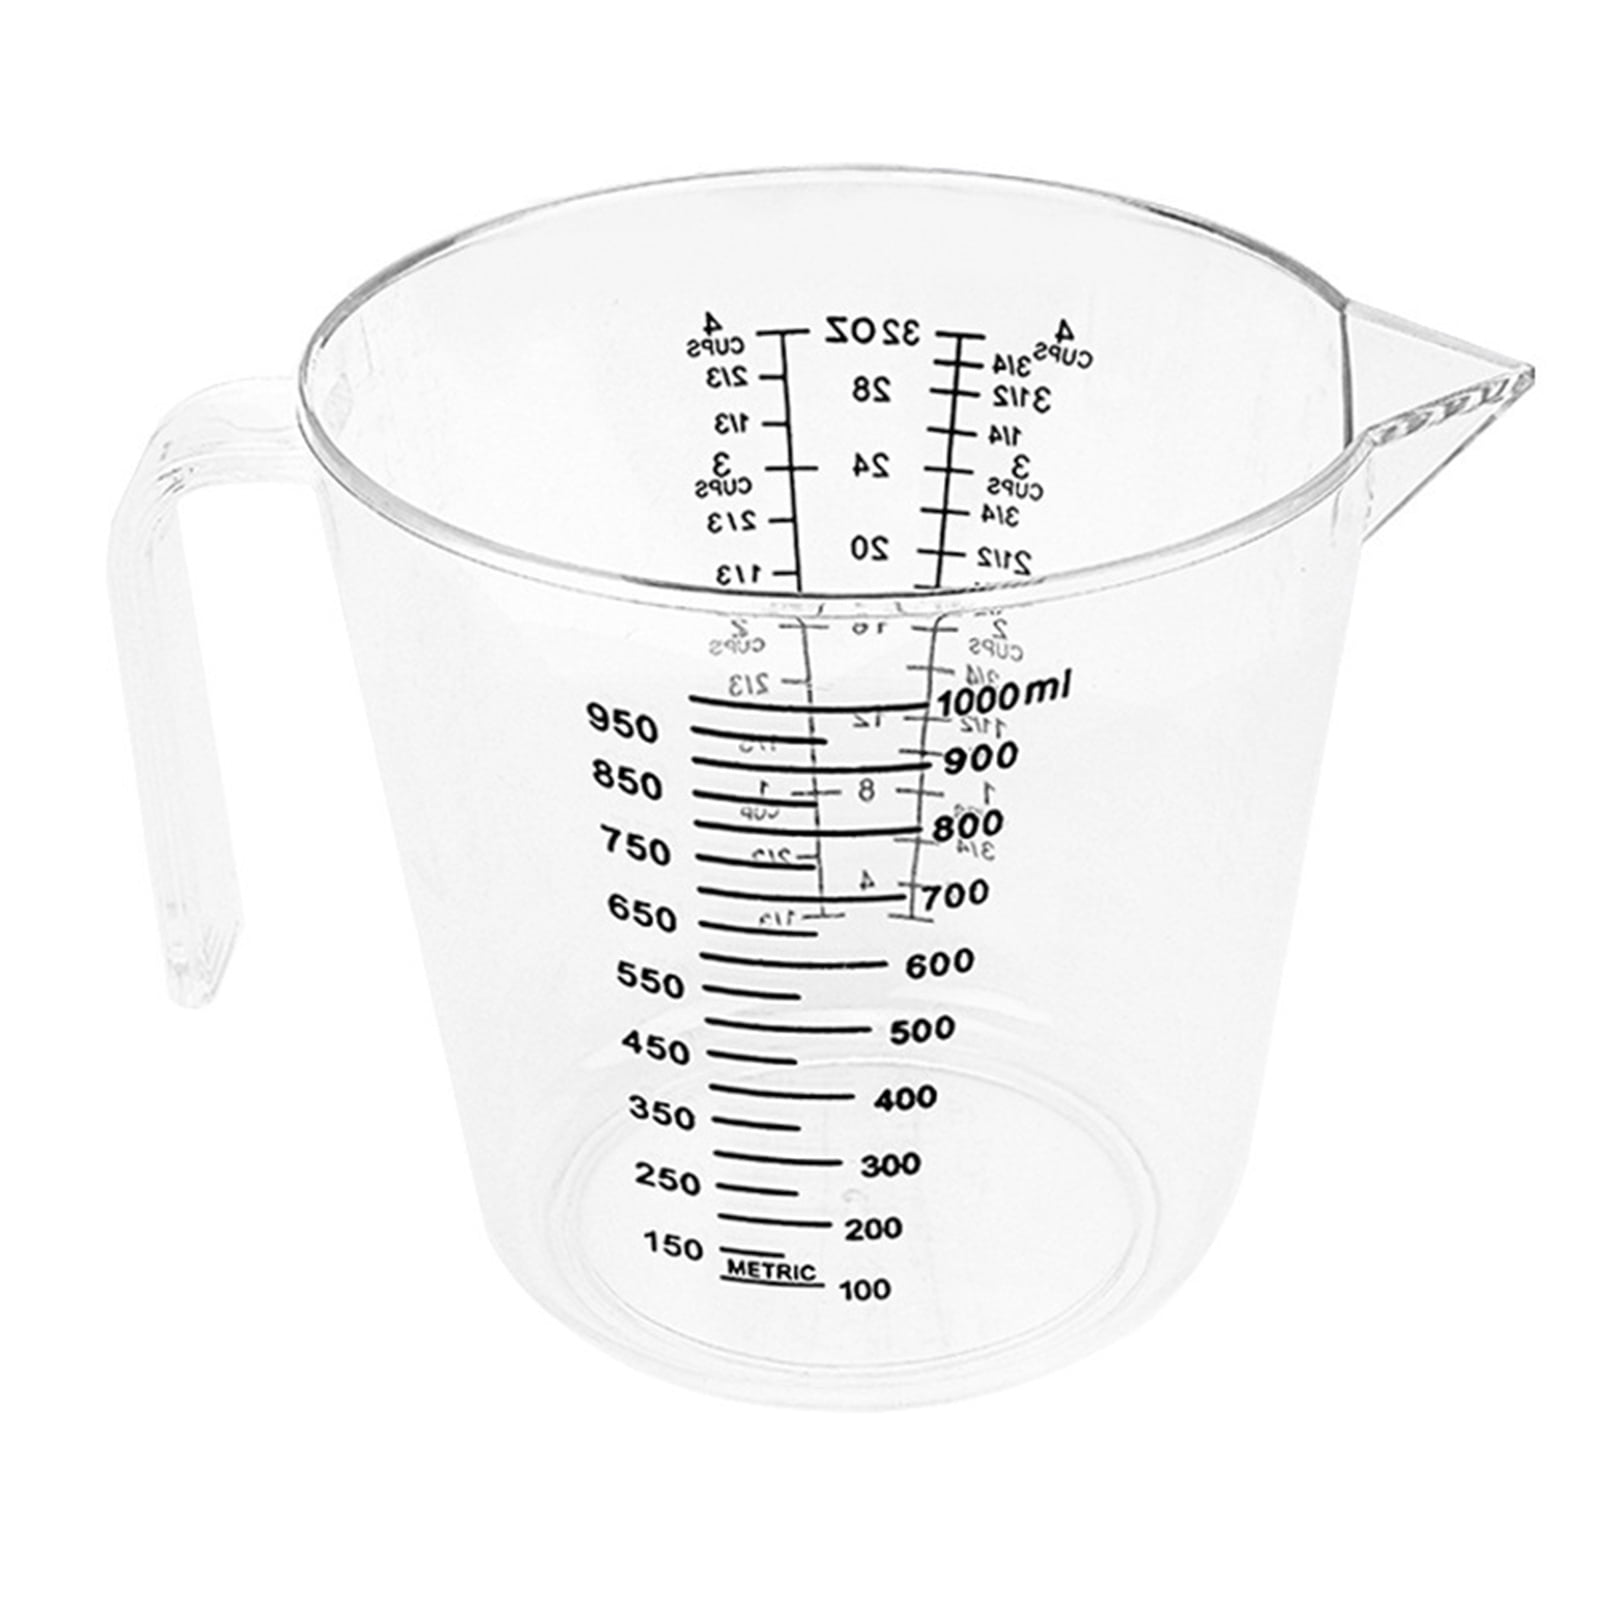 Liquid Measuring Cup – Galley & Fen